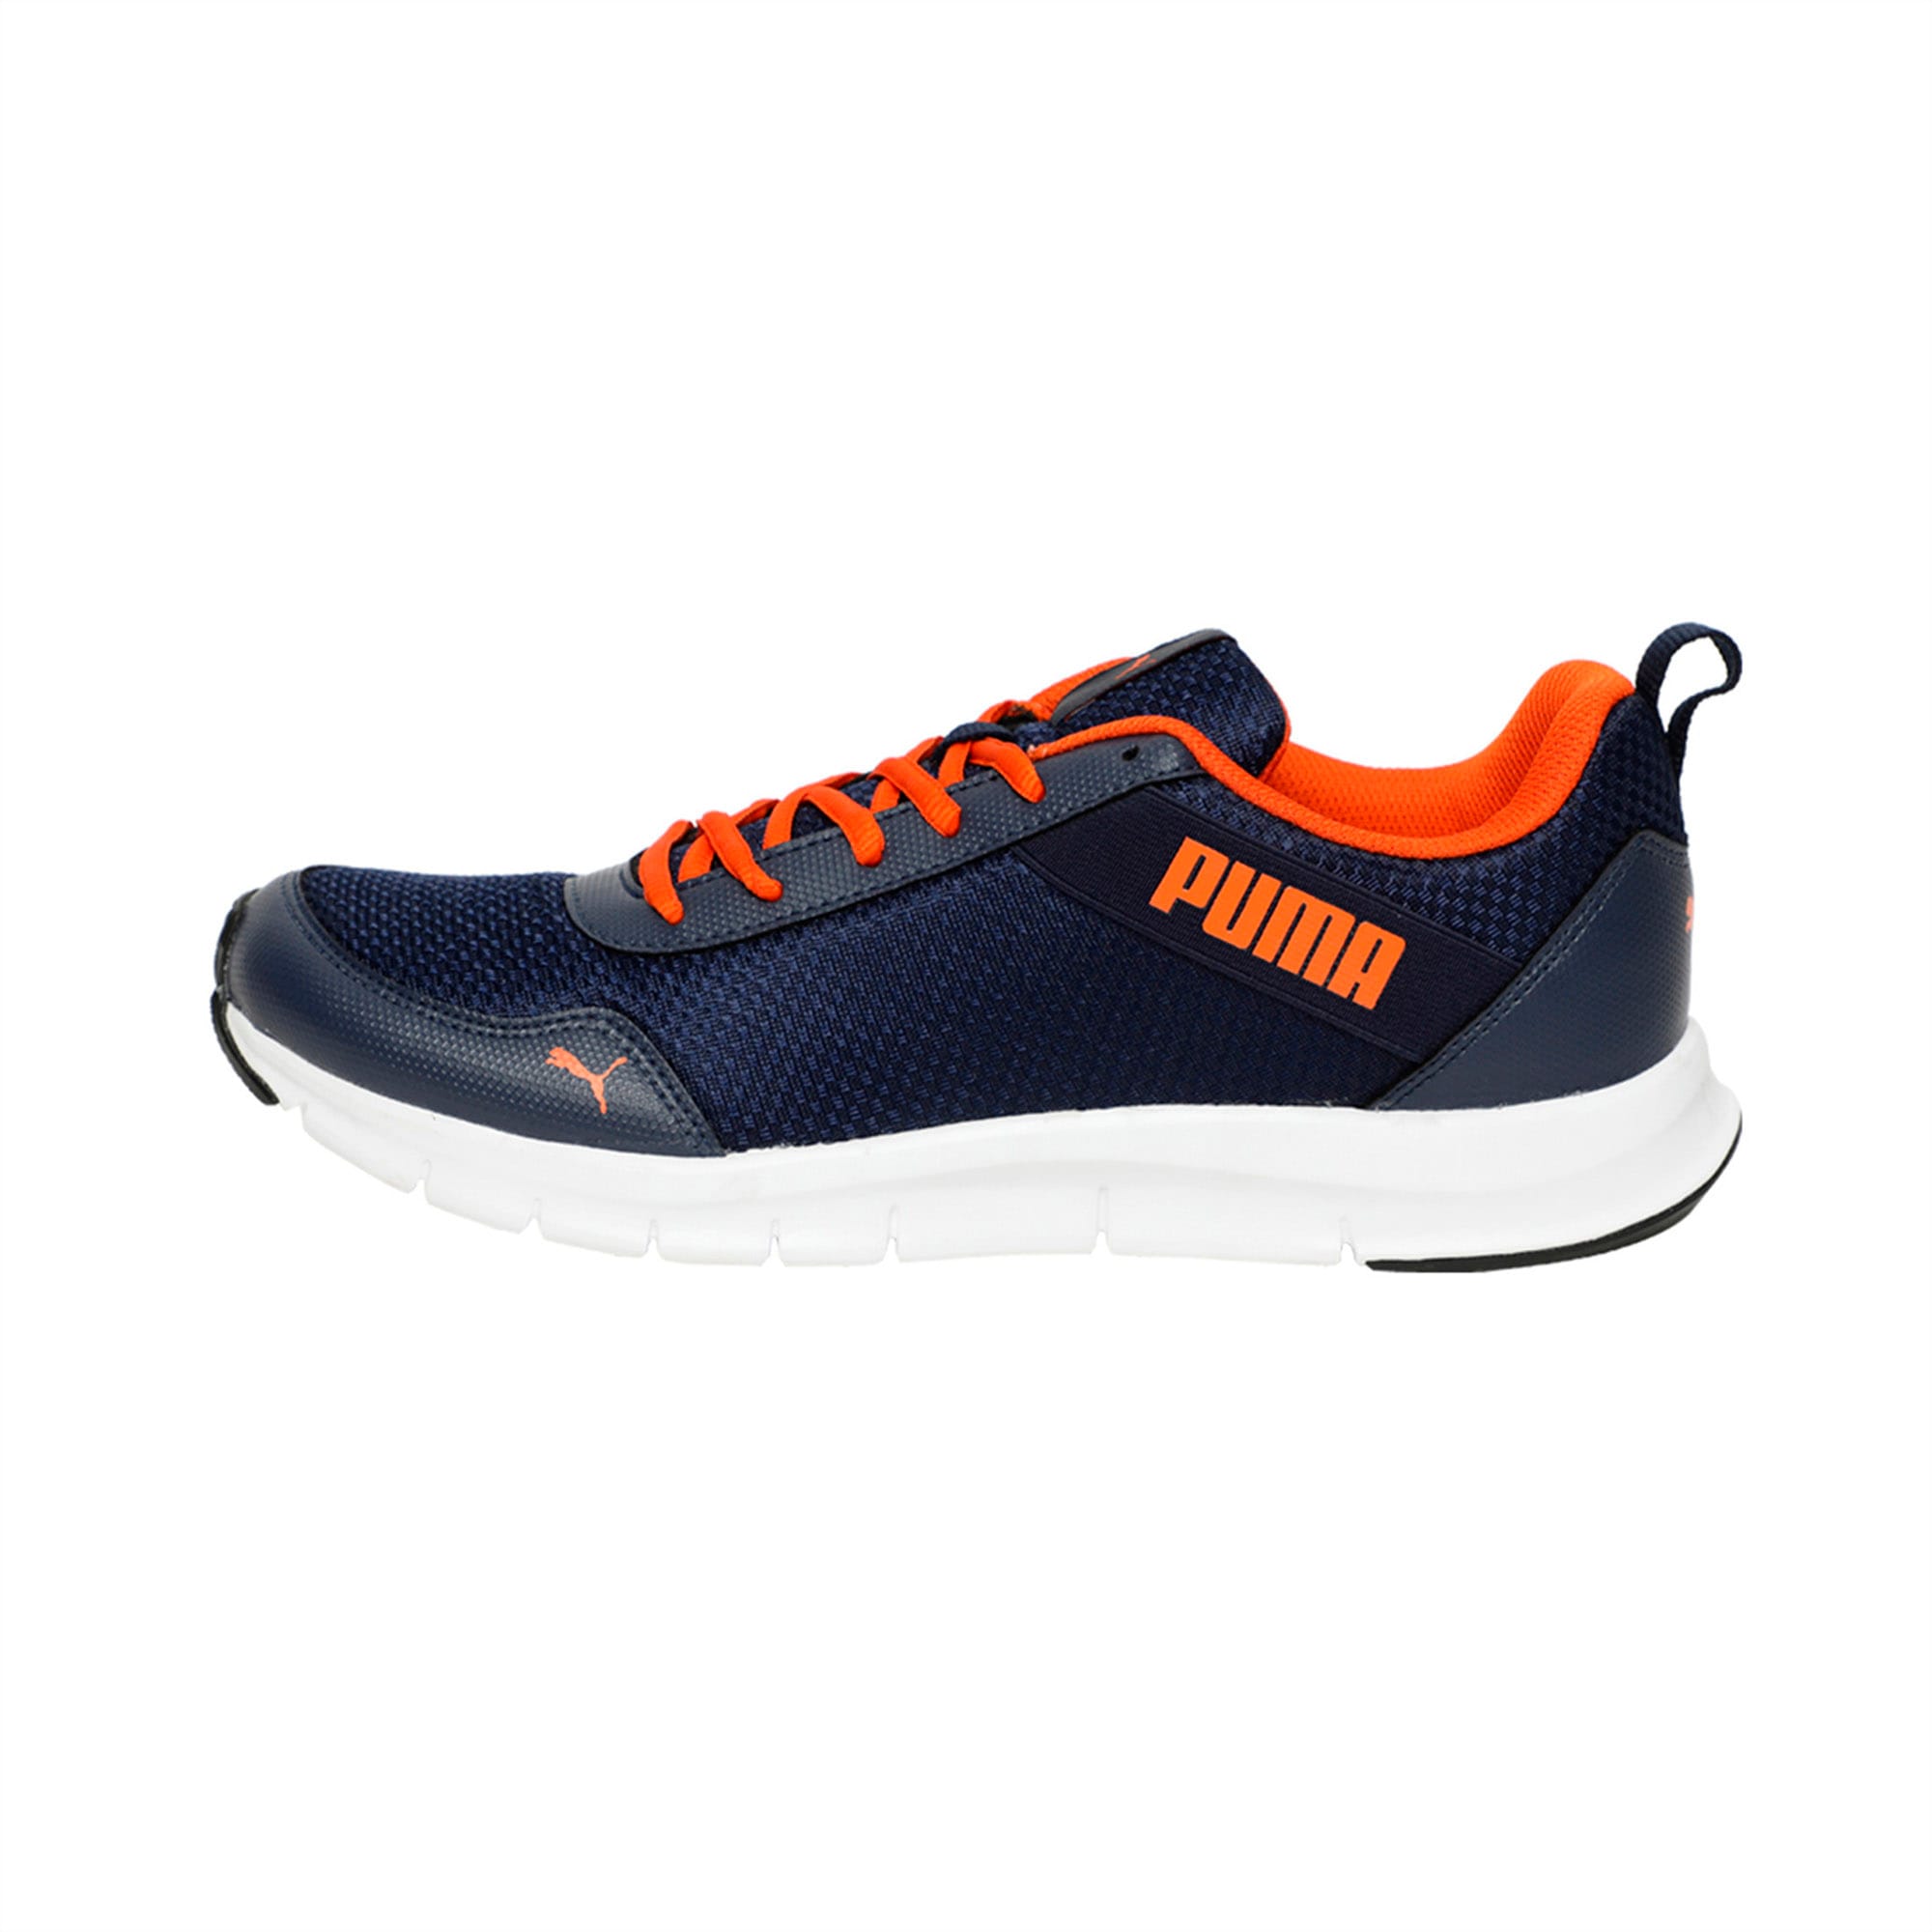 puma movemax idp running shoes